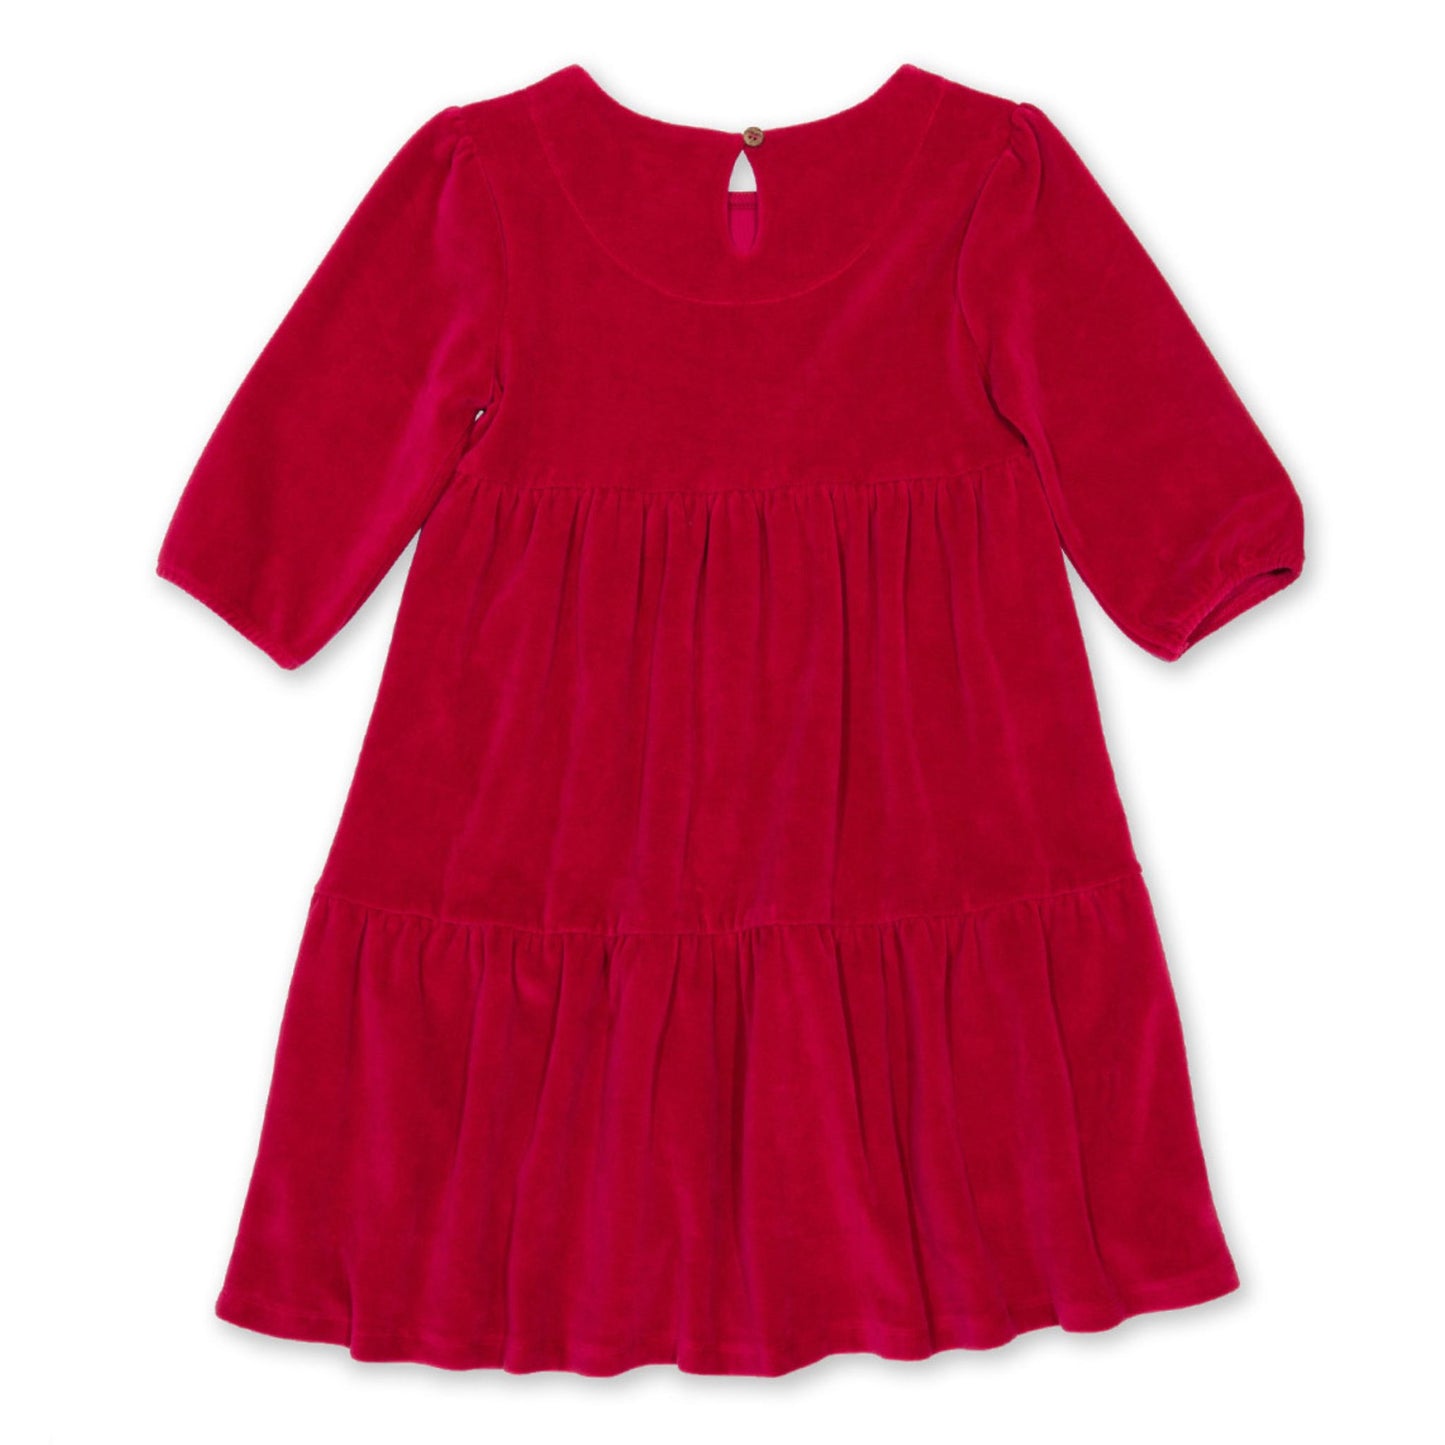 Velvety red party dress